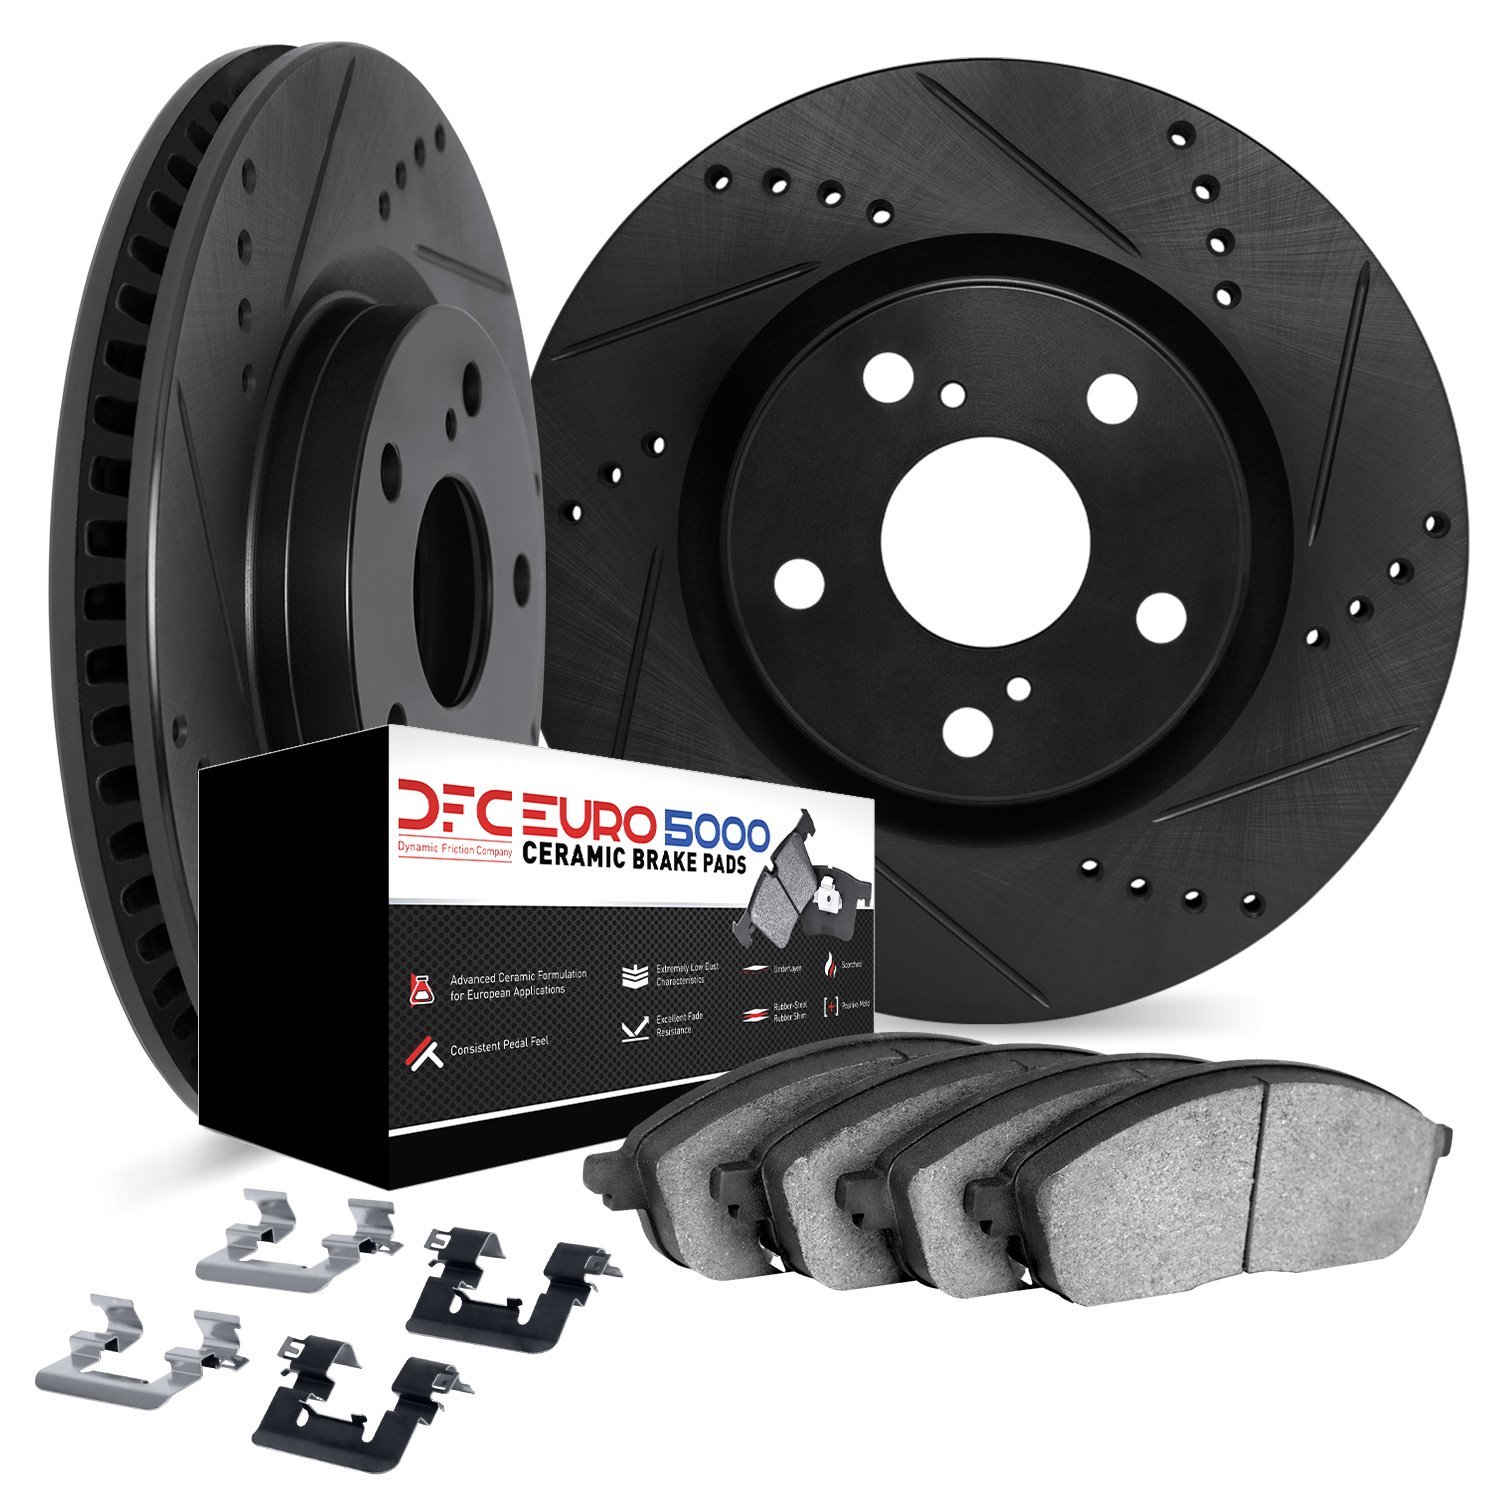 8612-72002 Drilled/Slotted Brake Rotors w/5000 Euro Ceramic Brake Pads Kit & Hardware [Black], 2008-2015 Mitsubishi, Position: R